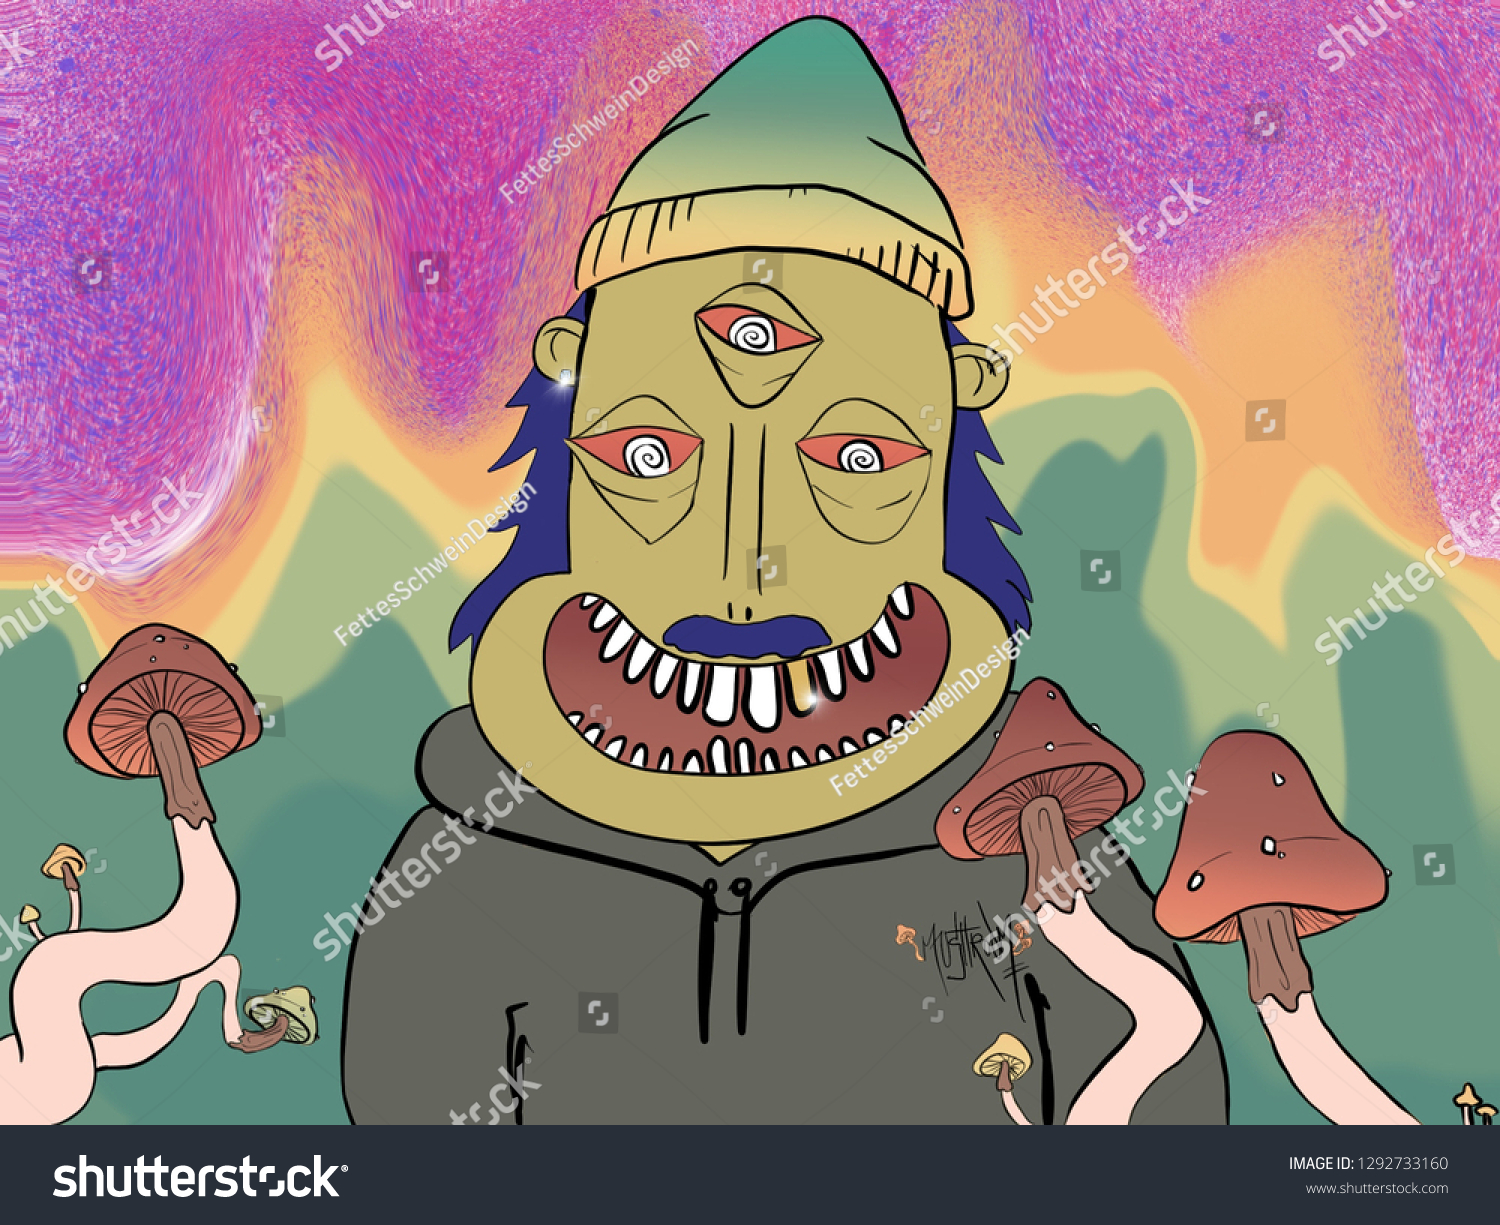 Mr Mushroom Man Stock Illustration 1292733160 | Shutterstock